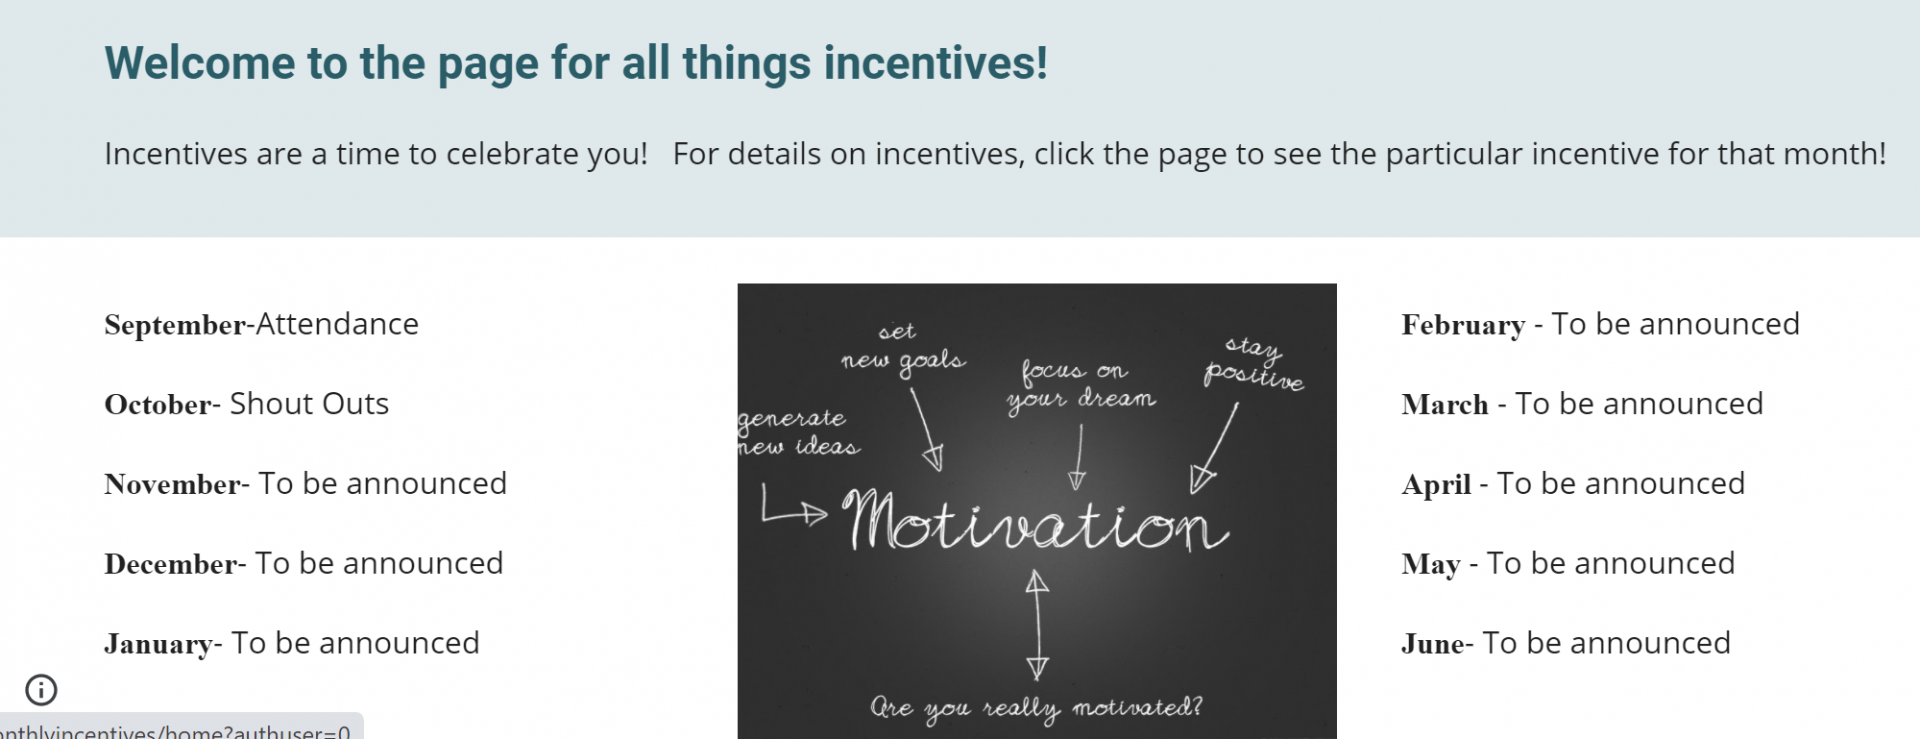 incentiveswebsite